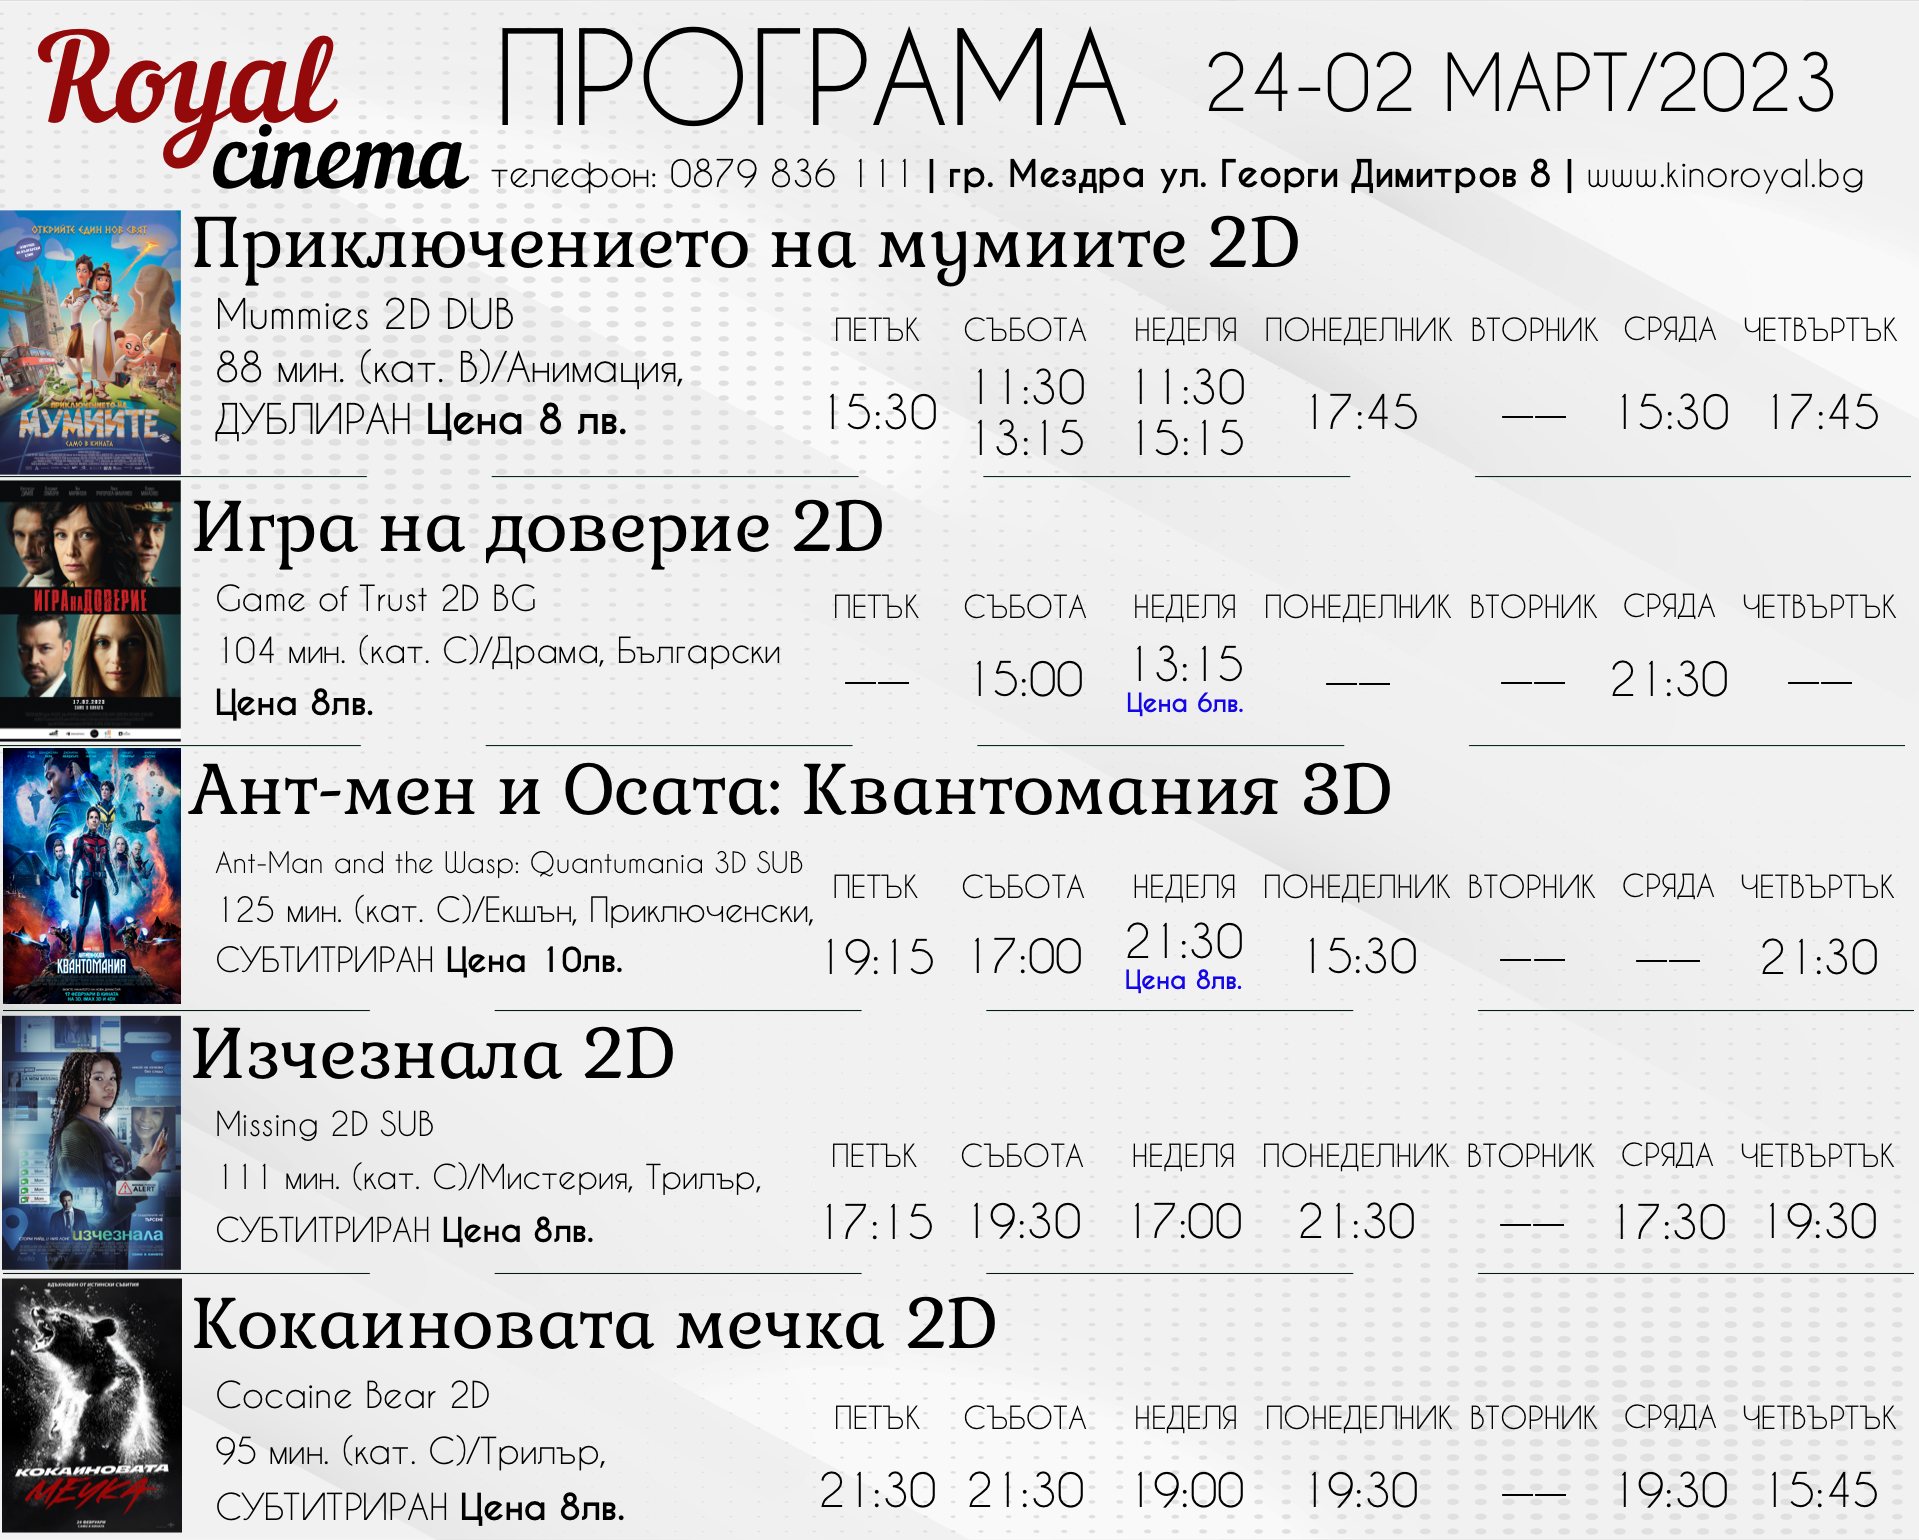 Кино Royal Мездра: Кино програма - от 24.02 - 02.03.2023